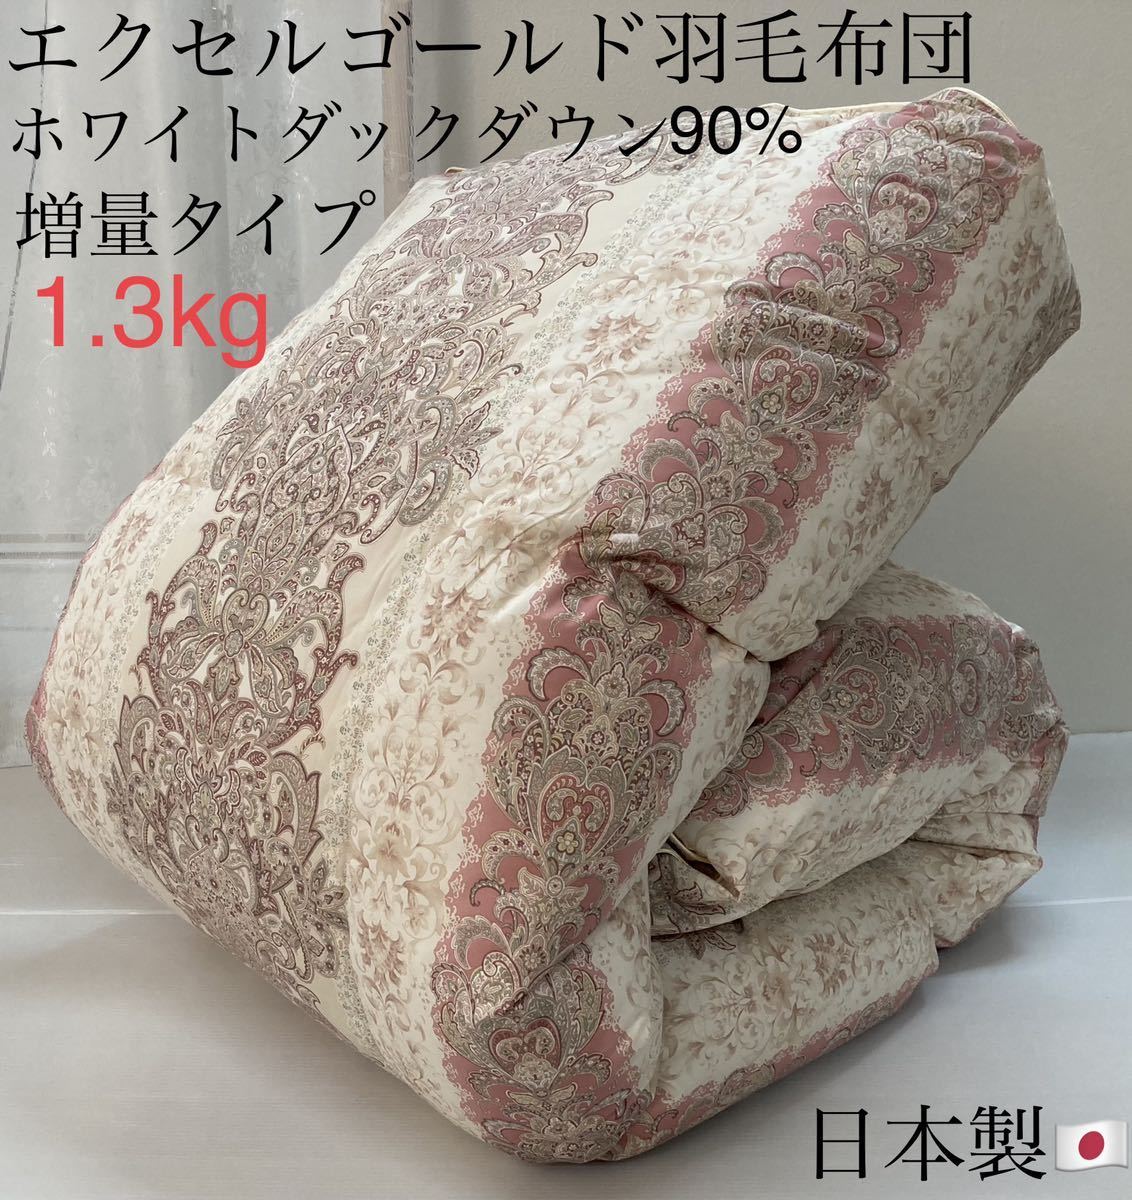 即決 【一枚限定】羽毛布団 増量タイプ 日本製 シングルサイズ